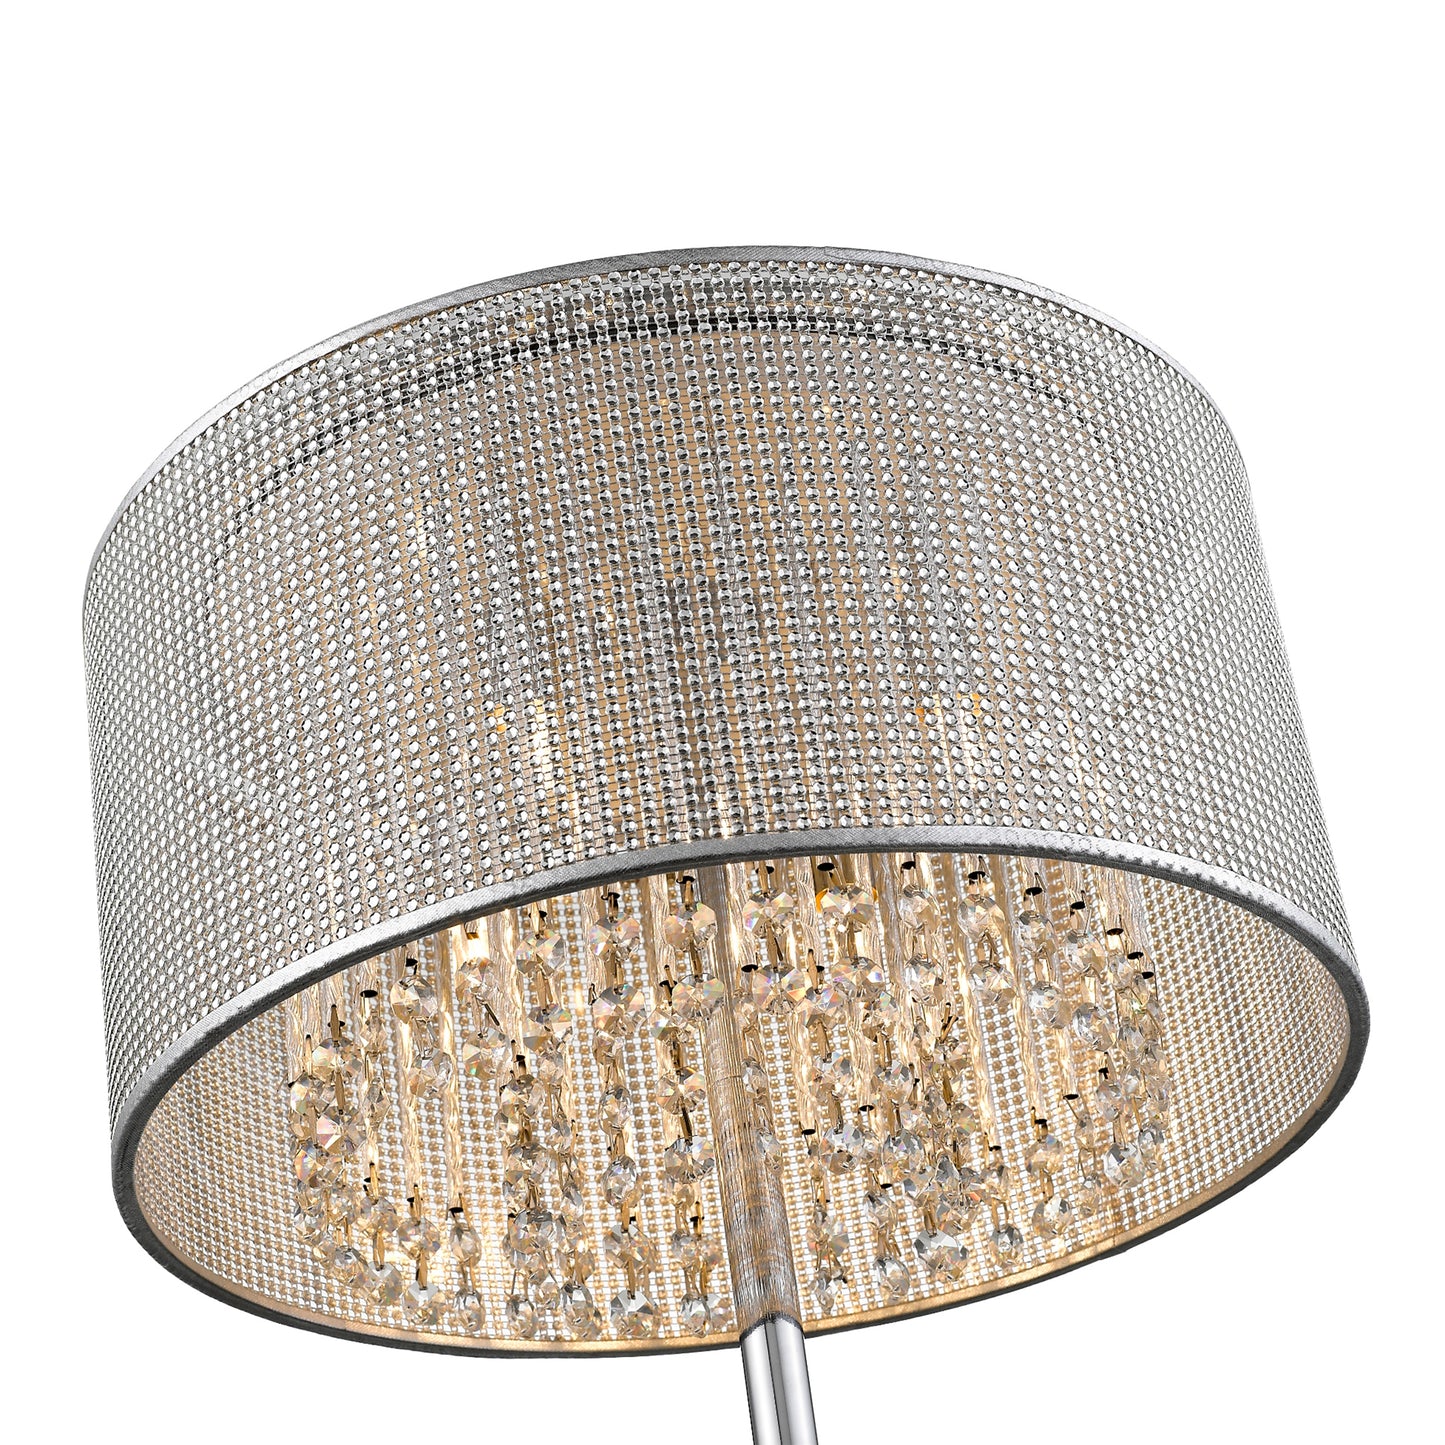 SL0374T Tuscano Crystal 4 Light Floor Lamp